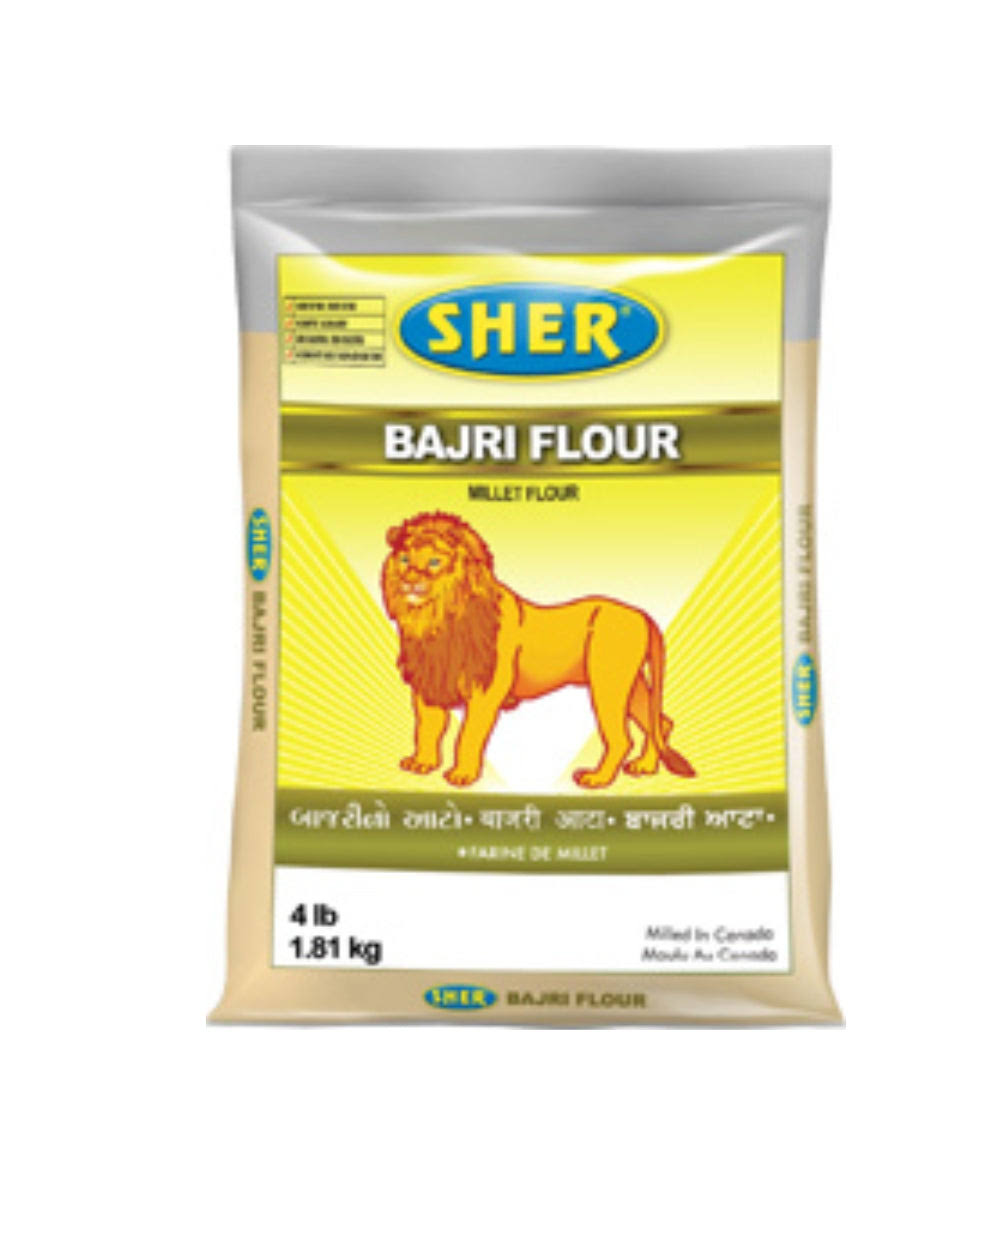 Sher Bajri Flour (Millet Flour) 4lb